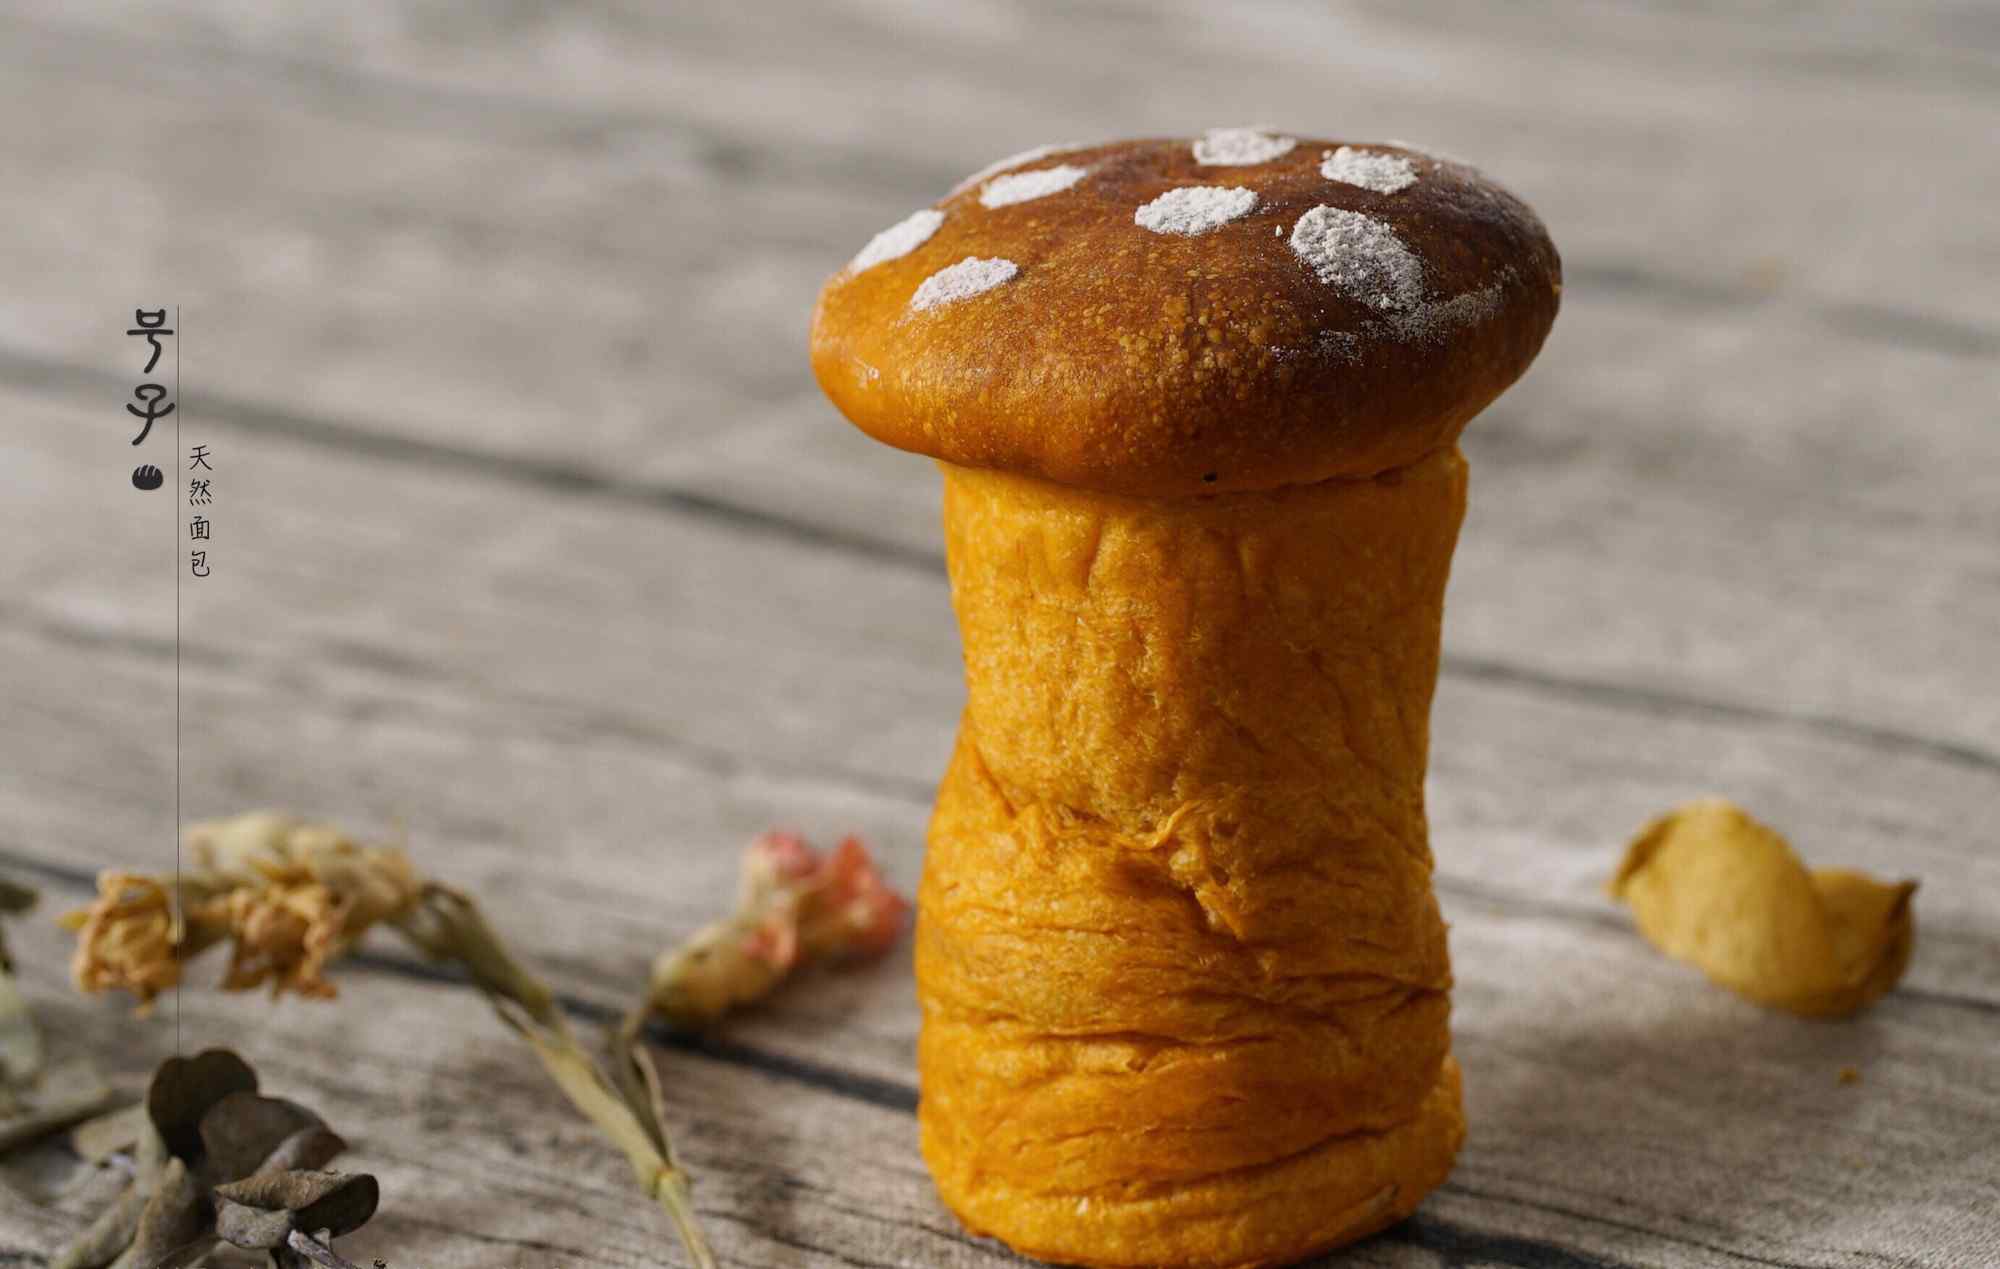 可爱的蘑菇形状的烤面包图片高清桌面壁纸